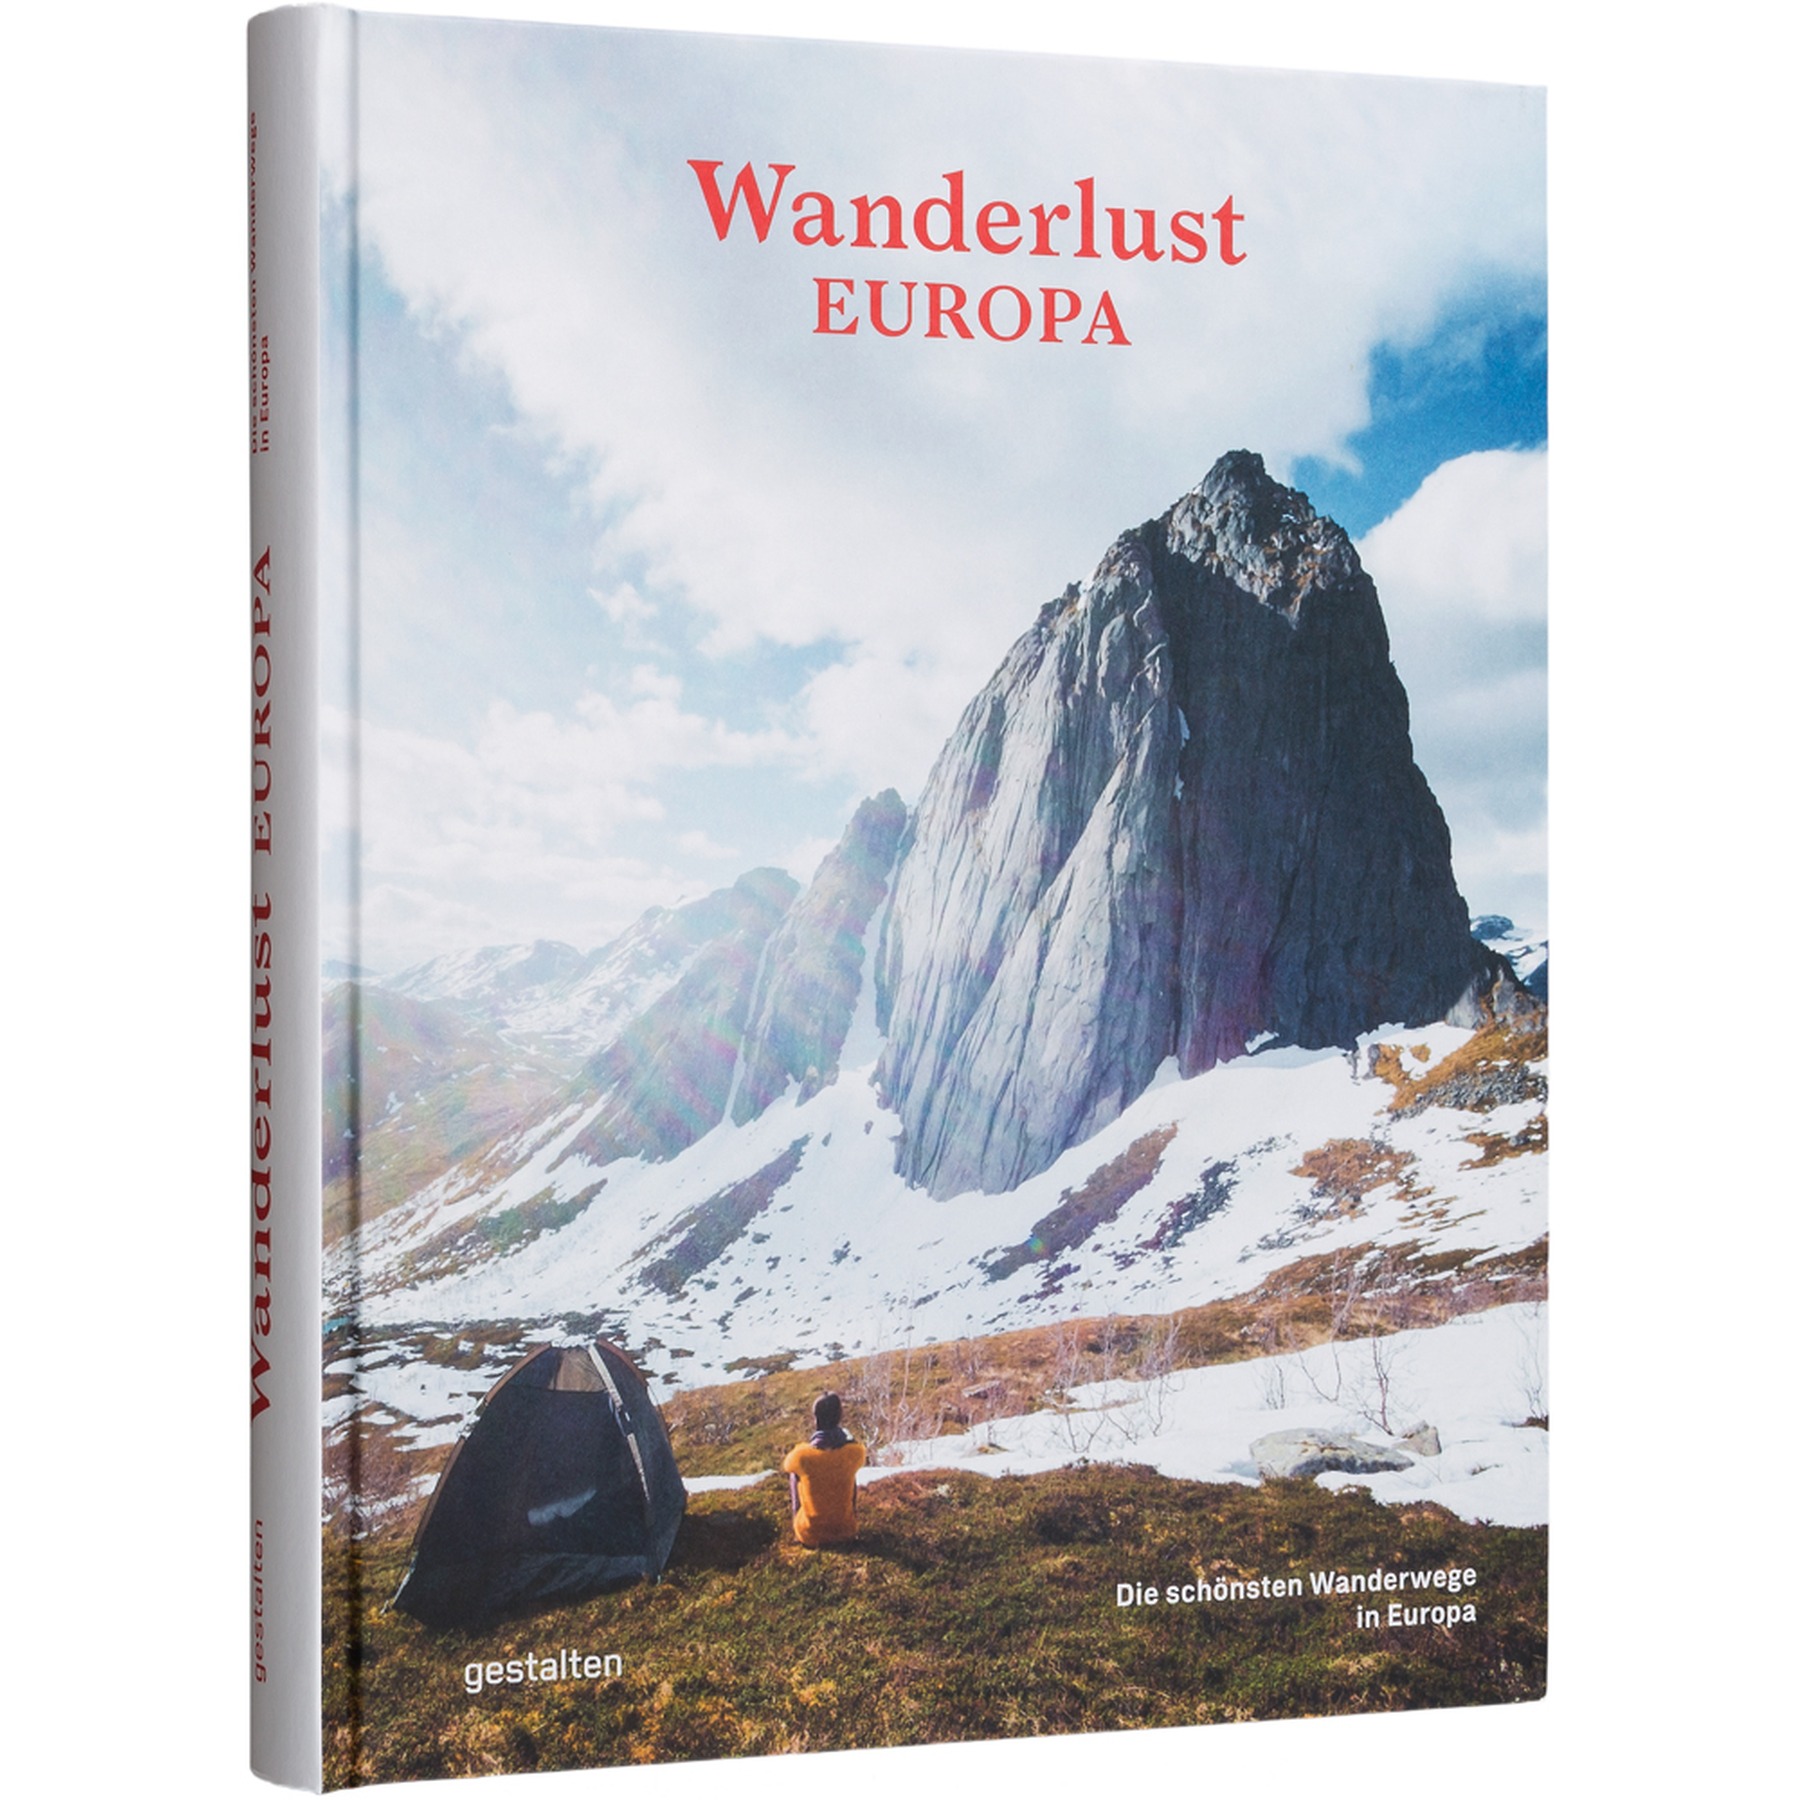 Productfoto van gestalten Wanderlust Europa - Die schönsten Wanderwege in Europa